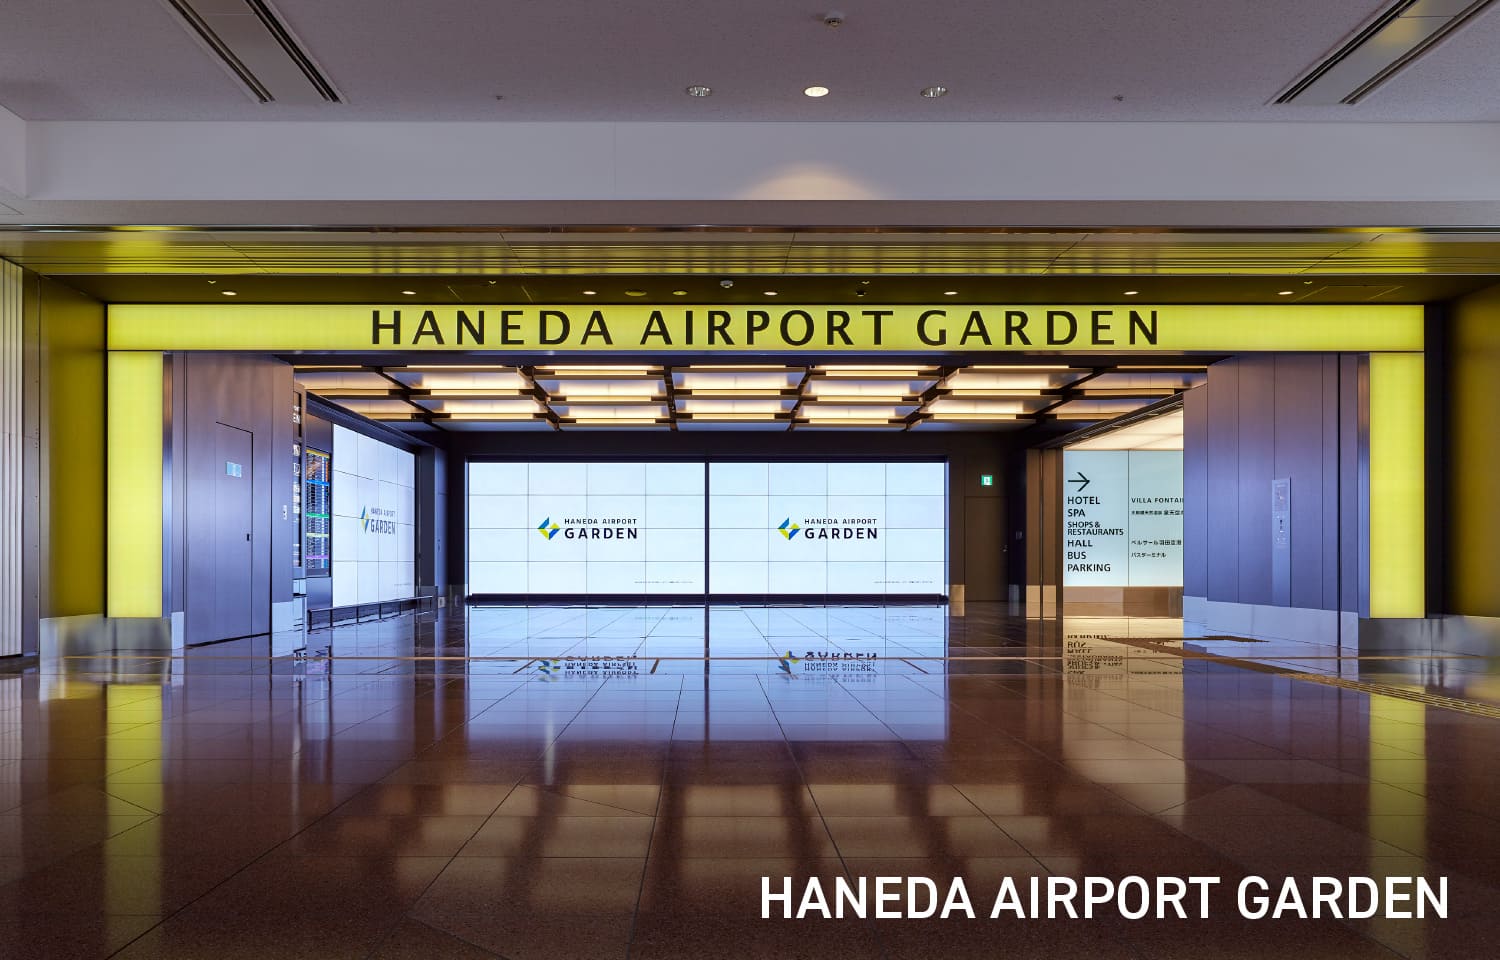 HANEDA AIRPORT GARDEN